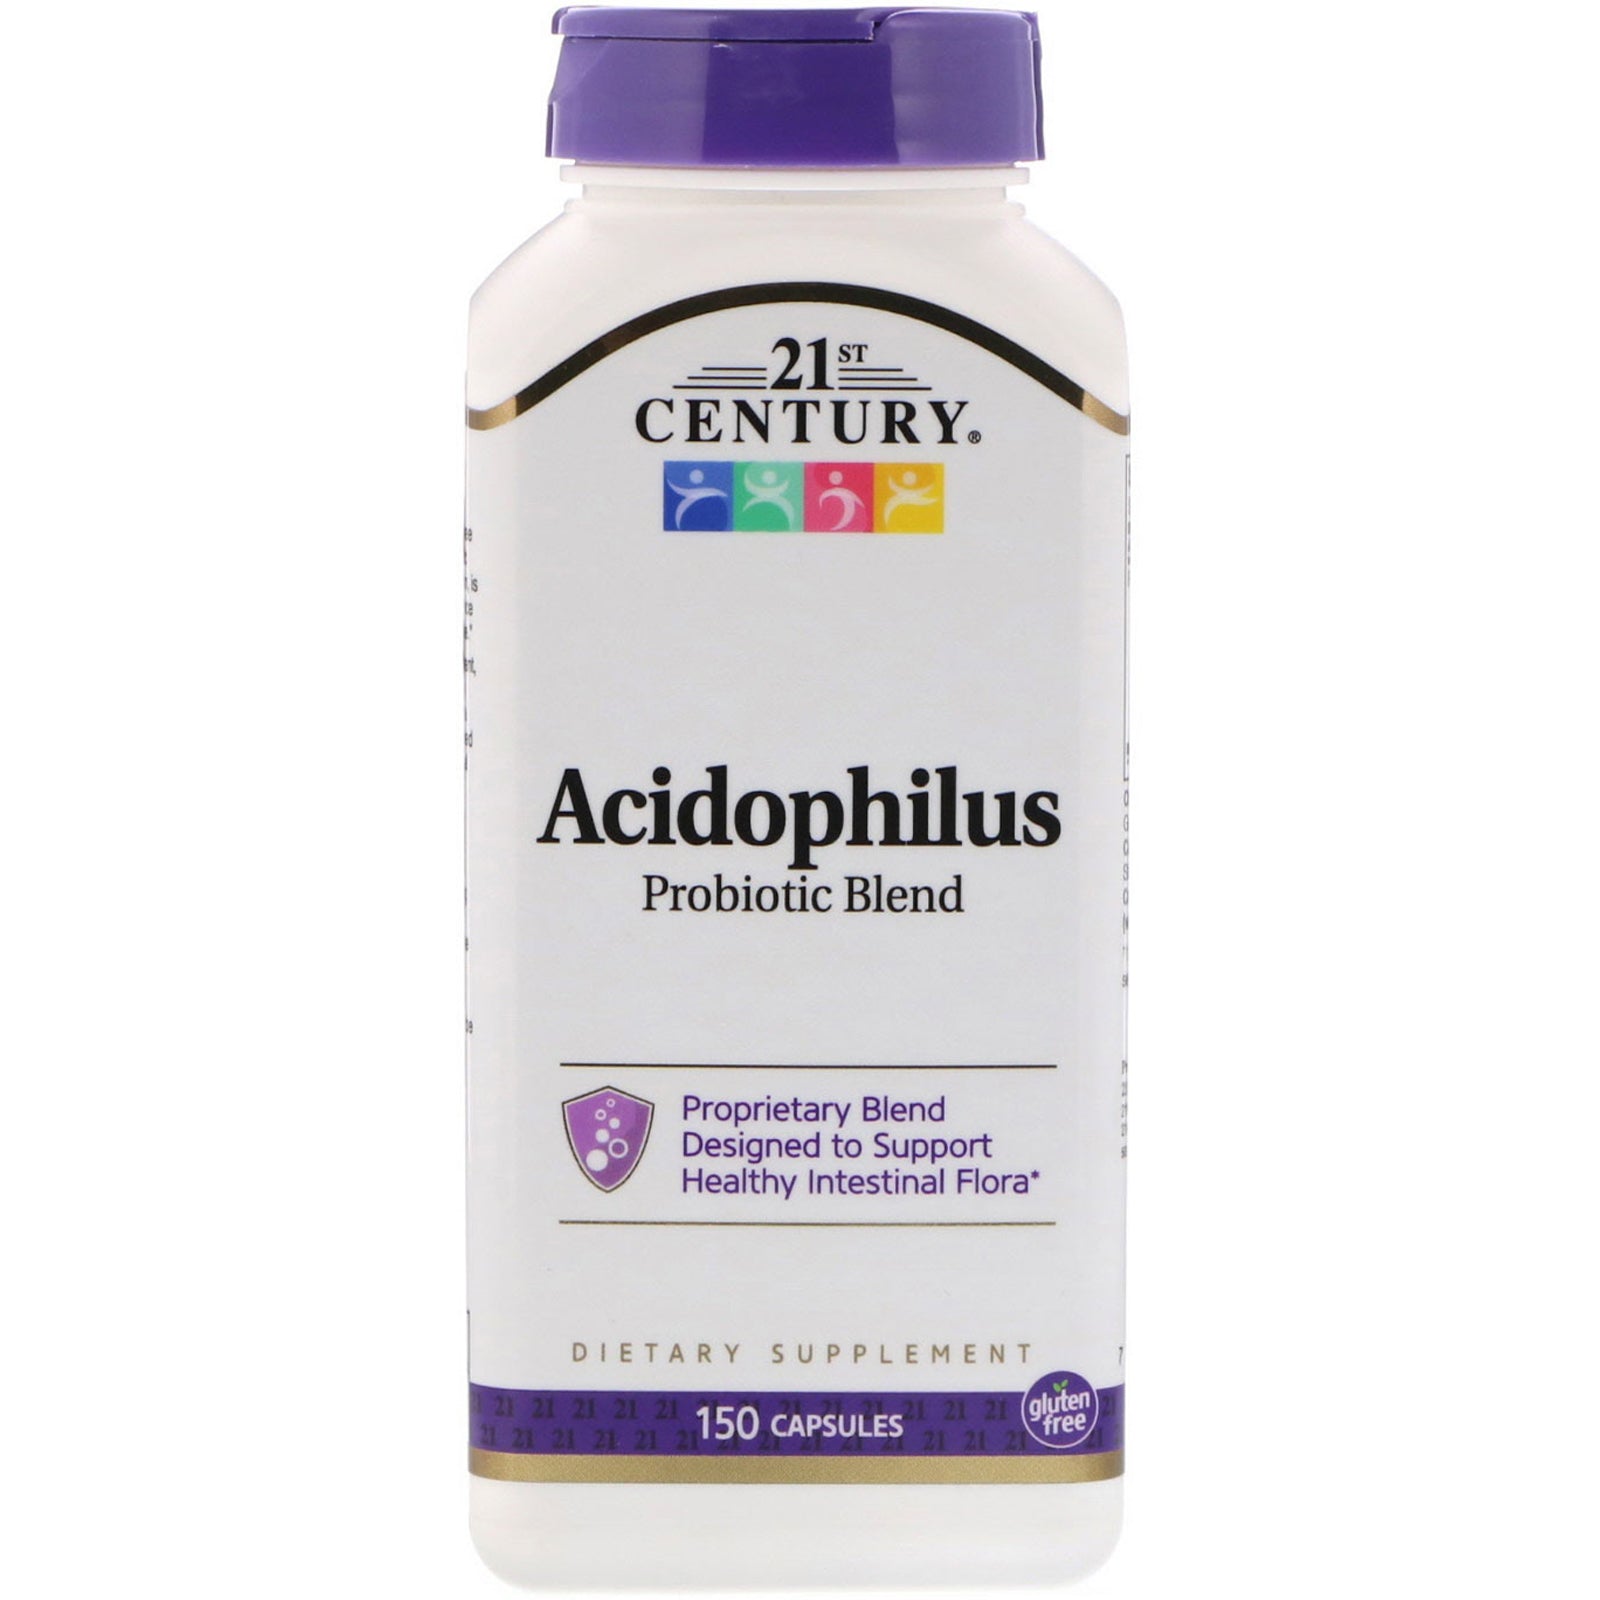 21st Century, Acidophilus Probiotic Blend, 150 Capsules